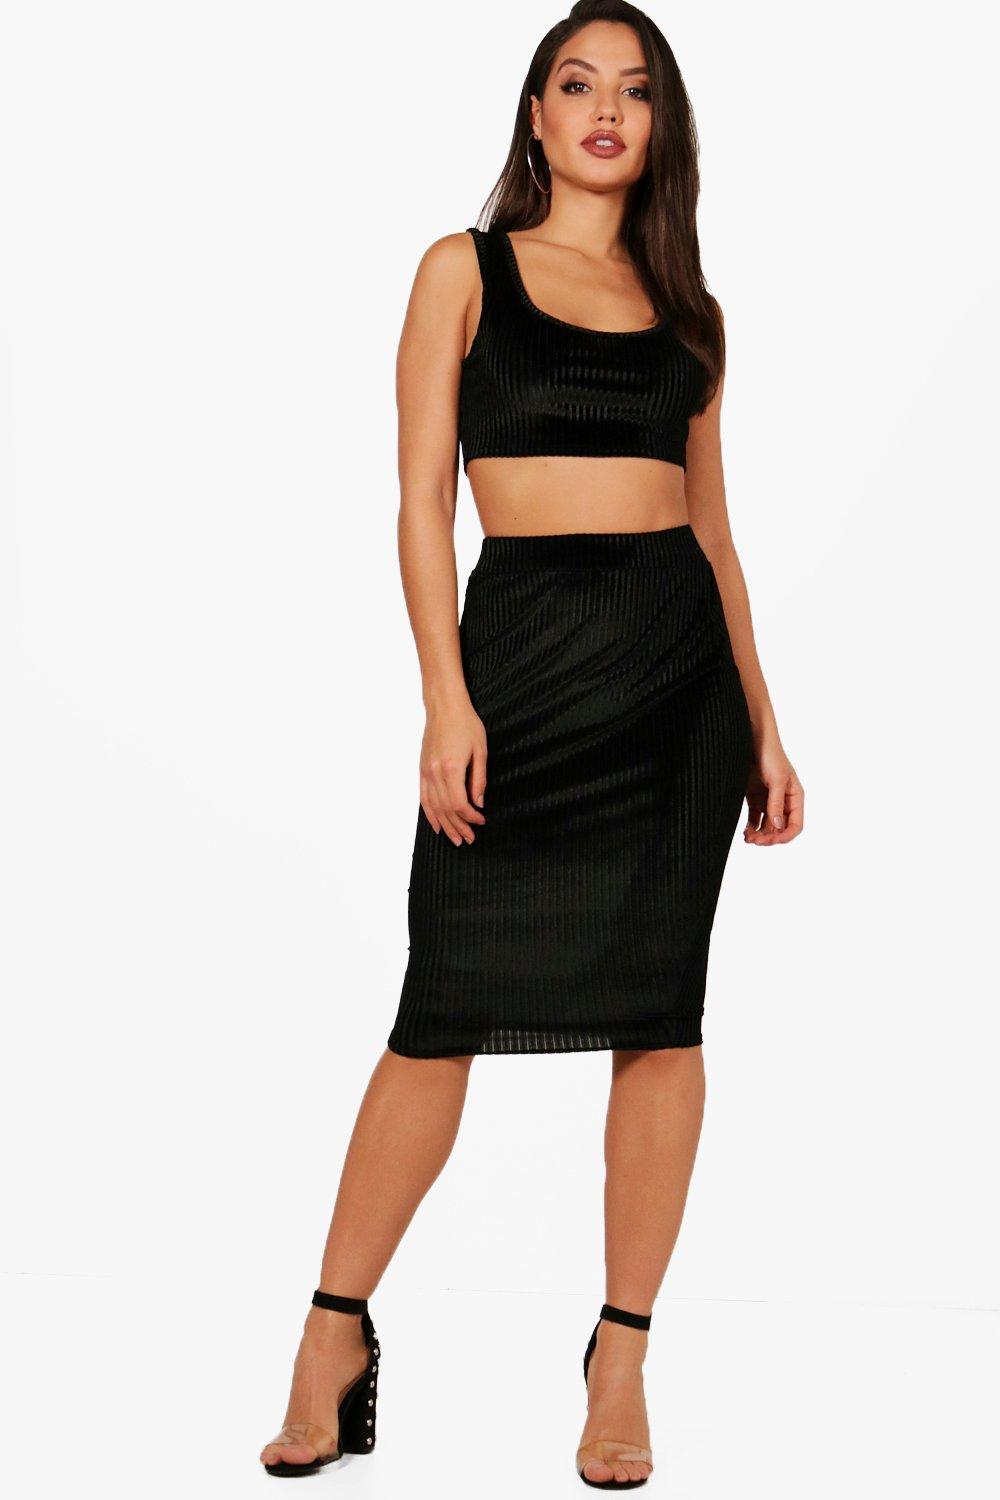 black velvet skirt midi